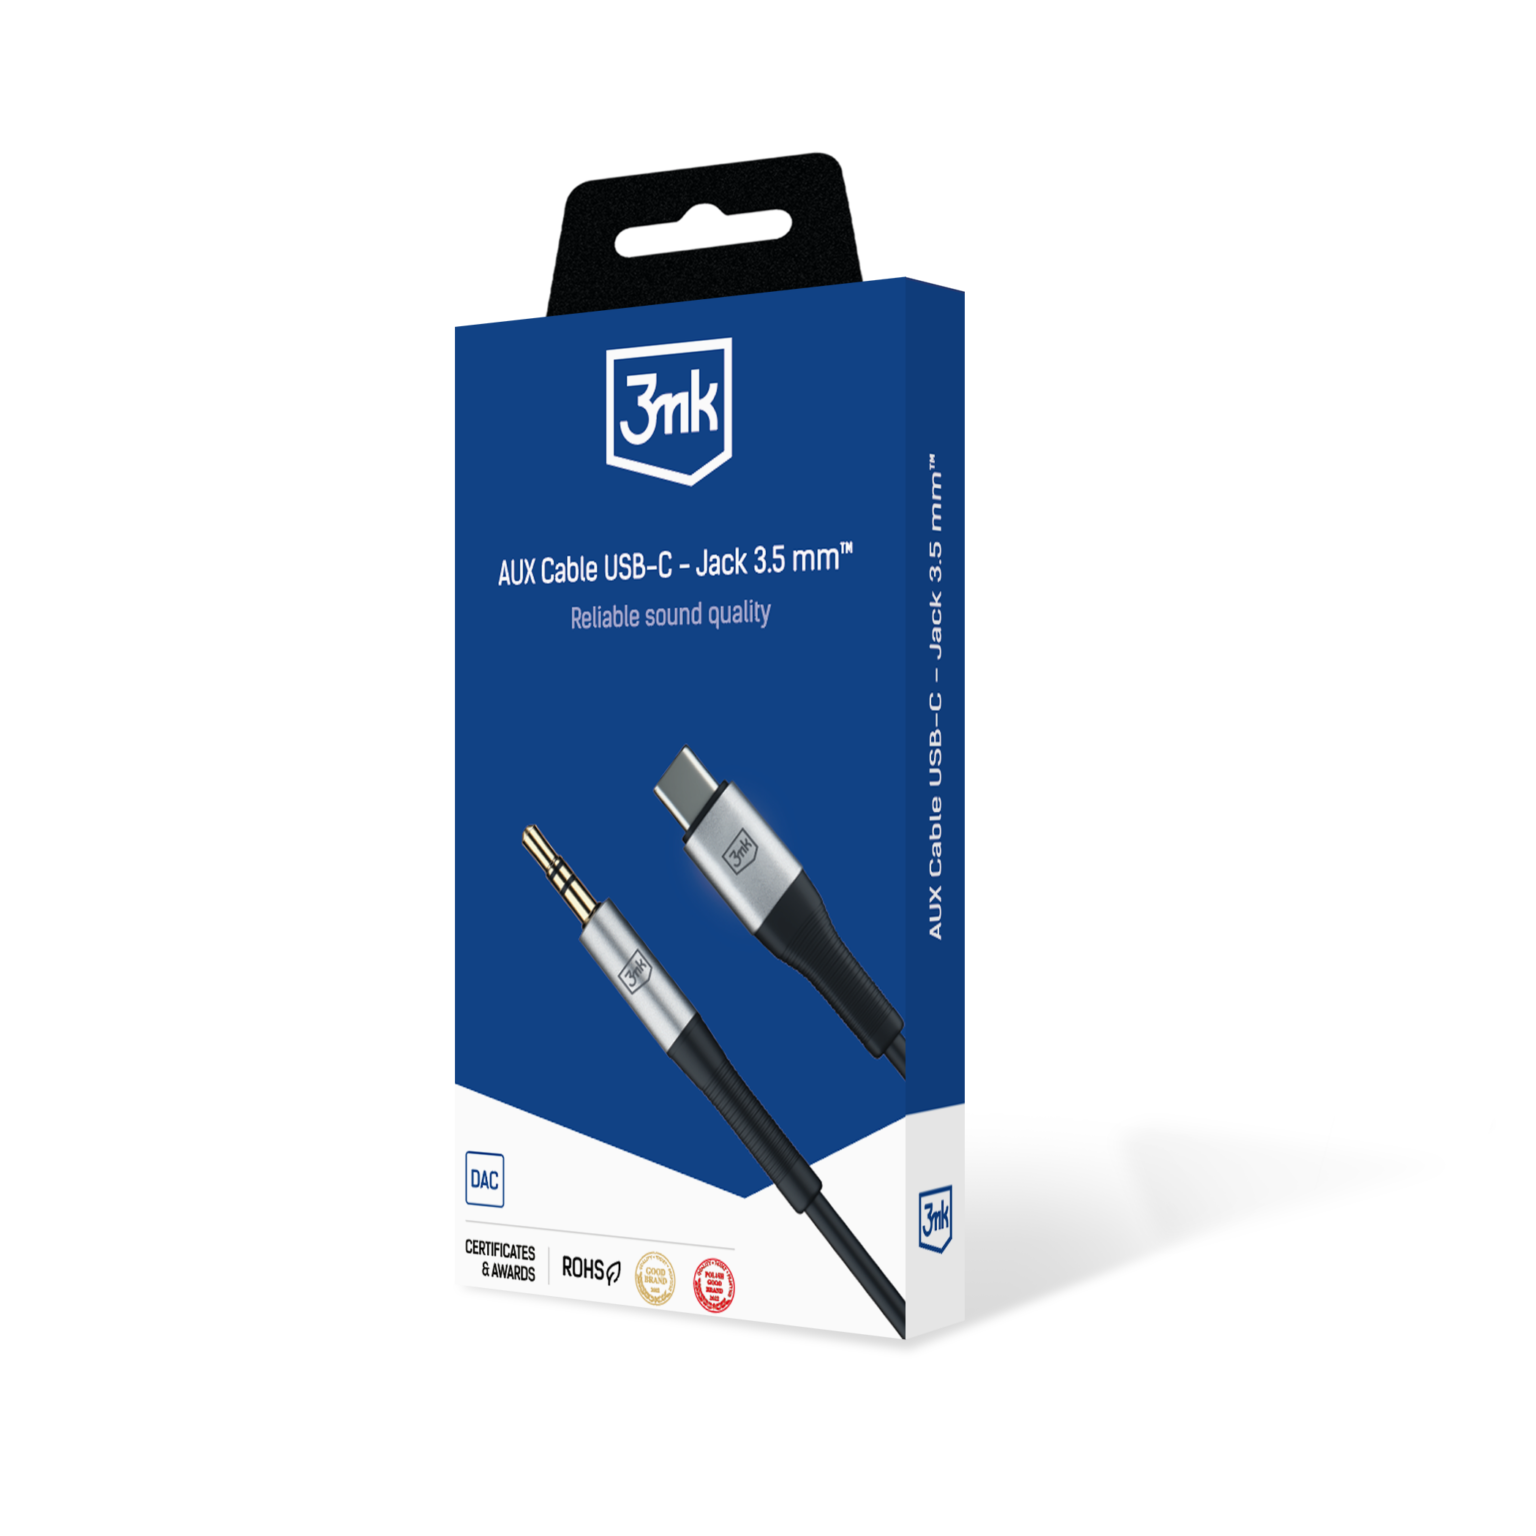 AUX-Cable-USB-C-Jack-3.5-mm_-packshot-1536x1536